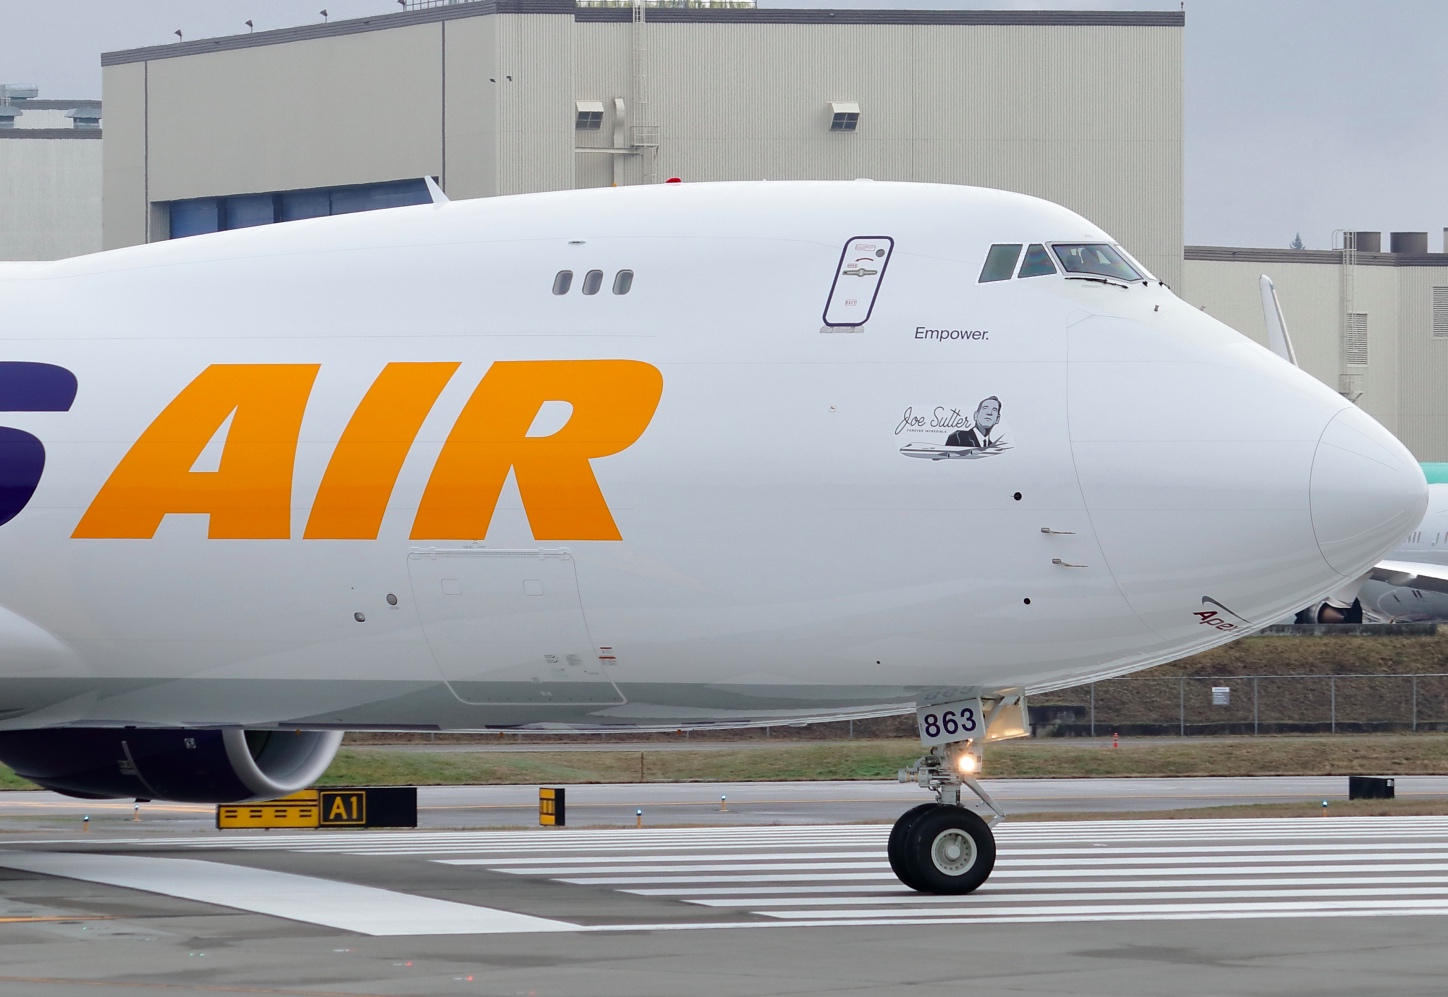 Último 747 produzido será entregue para a Atlas dia 1 de fevereiro